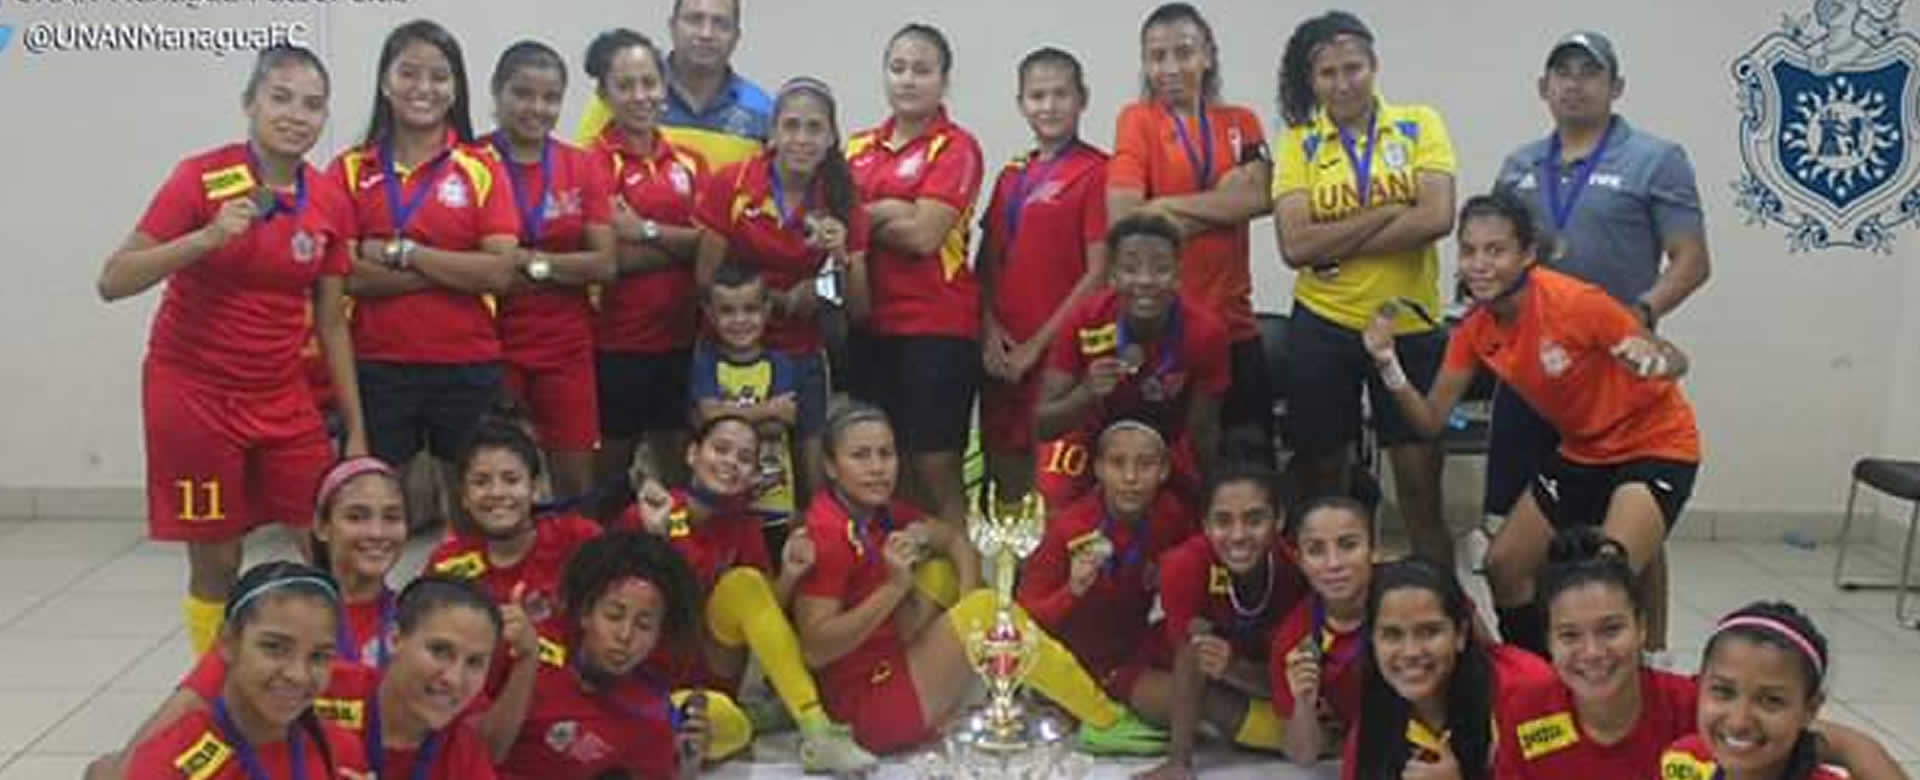 UNAN Managua se corona invicta en el campeonato de futbol femenino